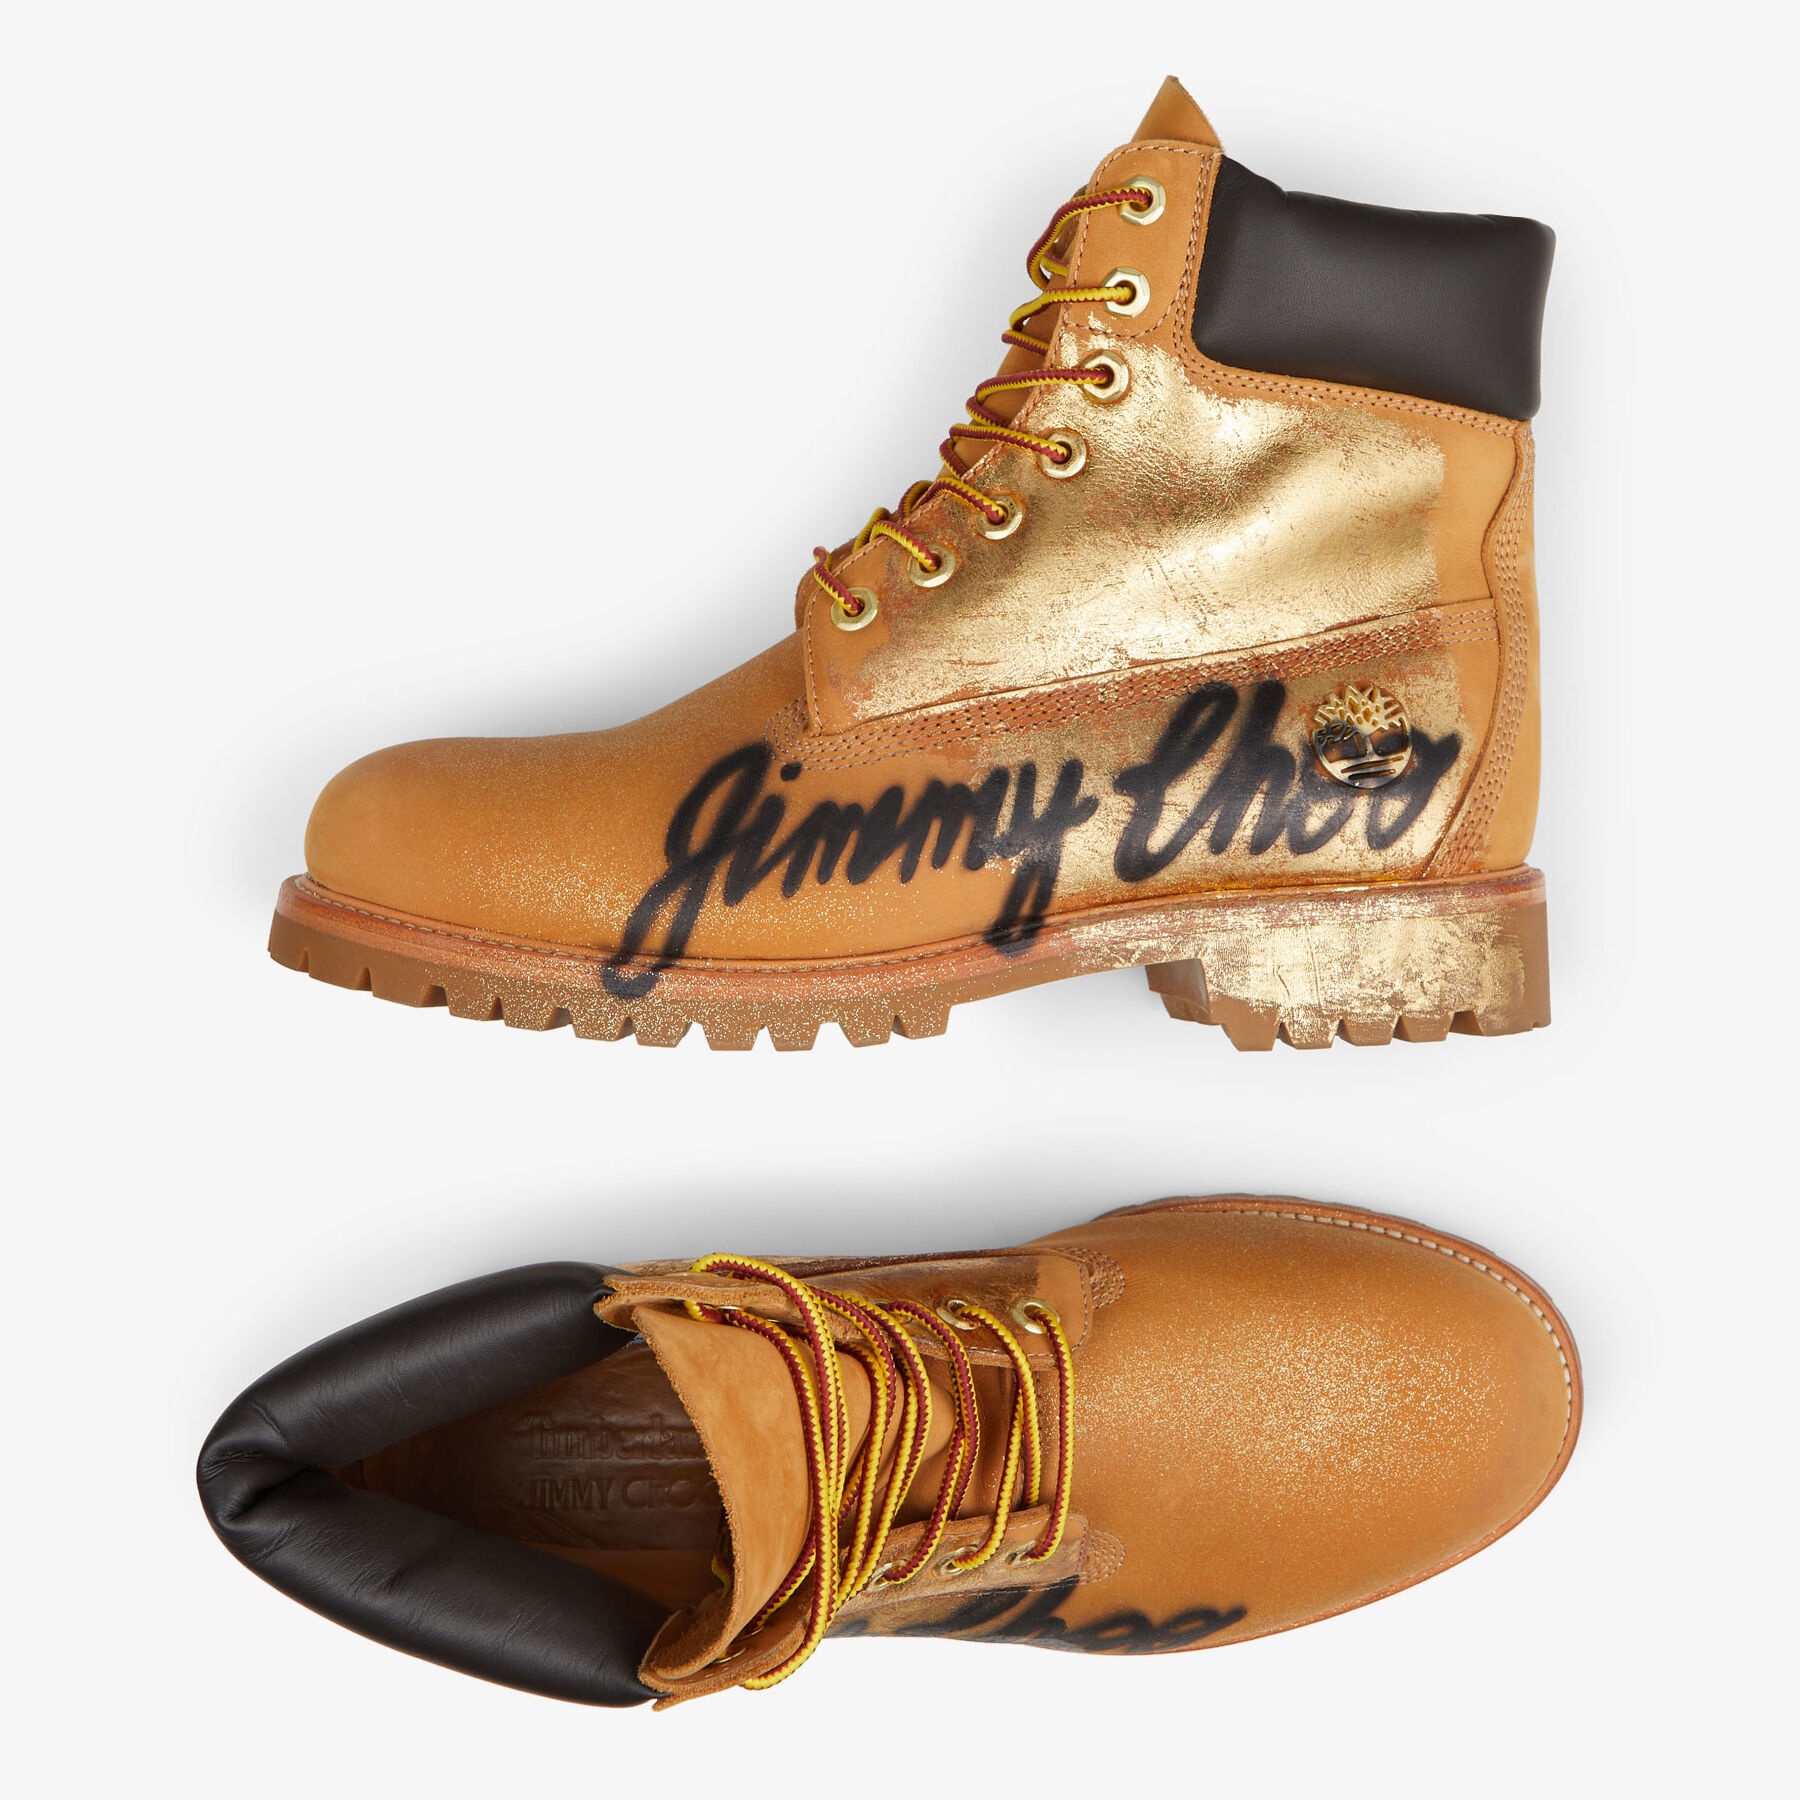 JIMMY CHOO X TIMBERLAND 6 INCH GRAFFITI BOOT
Wheat Timberland Nubuck Ankle Boots with Jimmy Choo Gra - 5